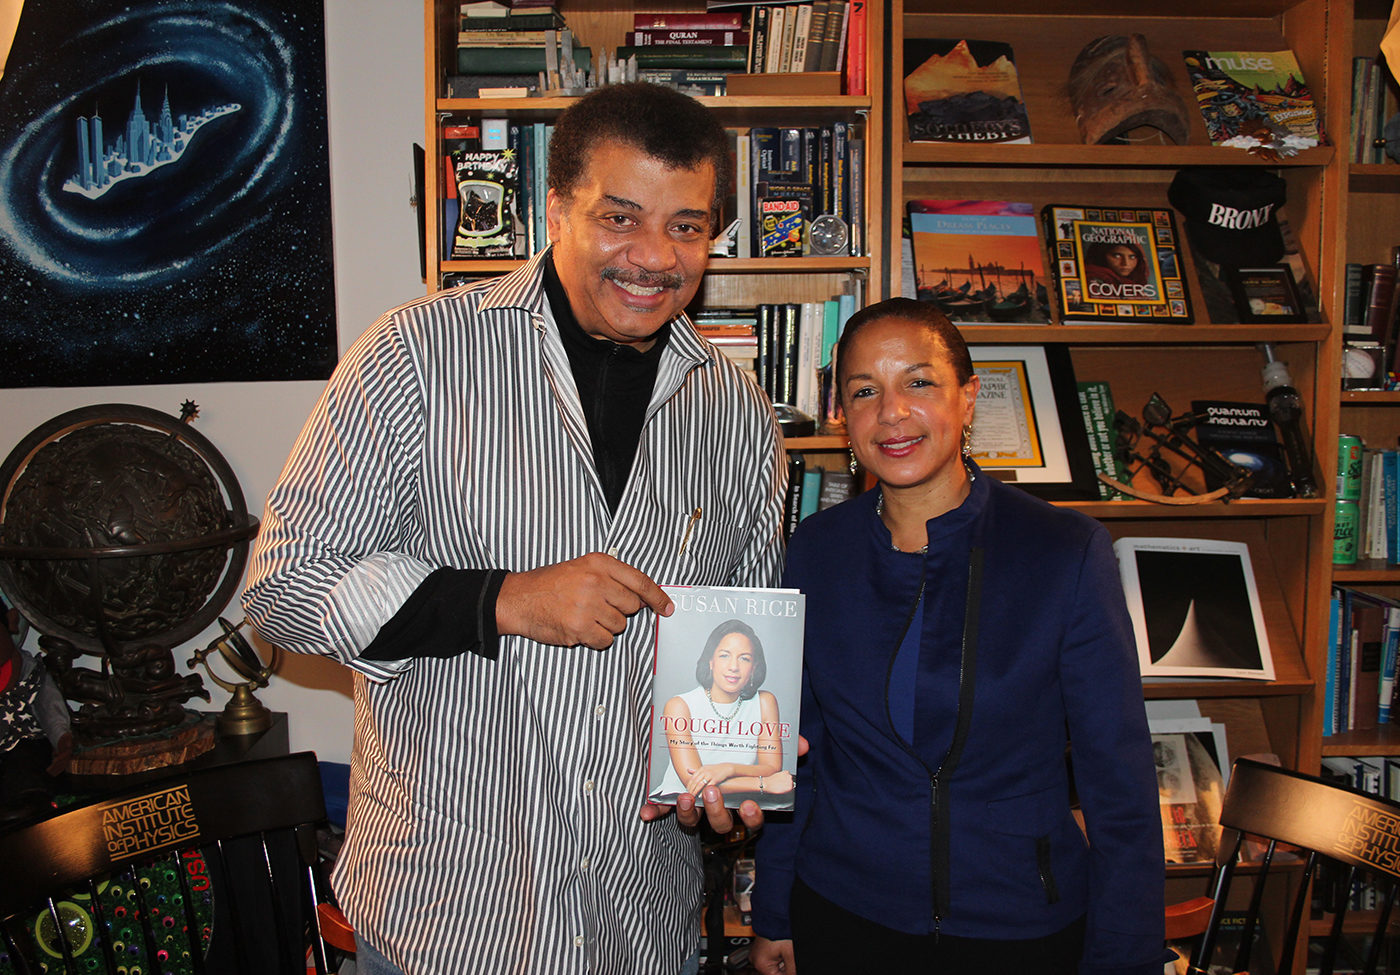 StarTalk’s photo of Neil deGrasse Tyson and Ambassador Susan Rice.